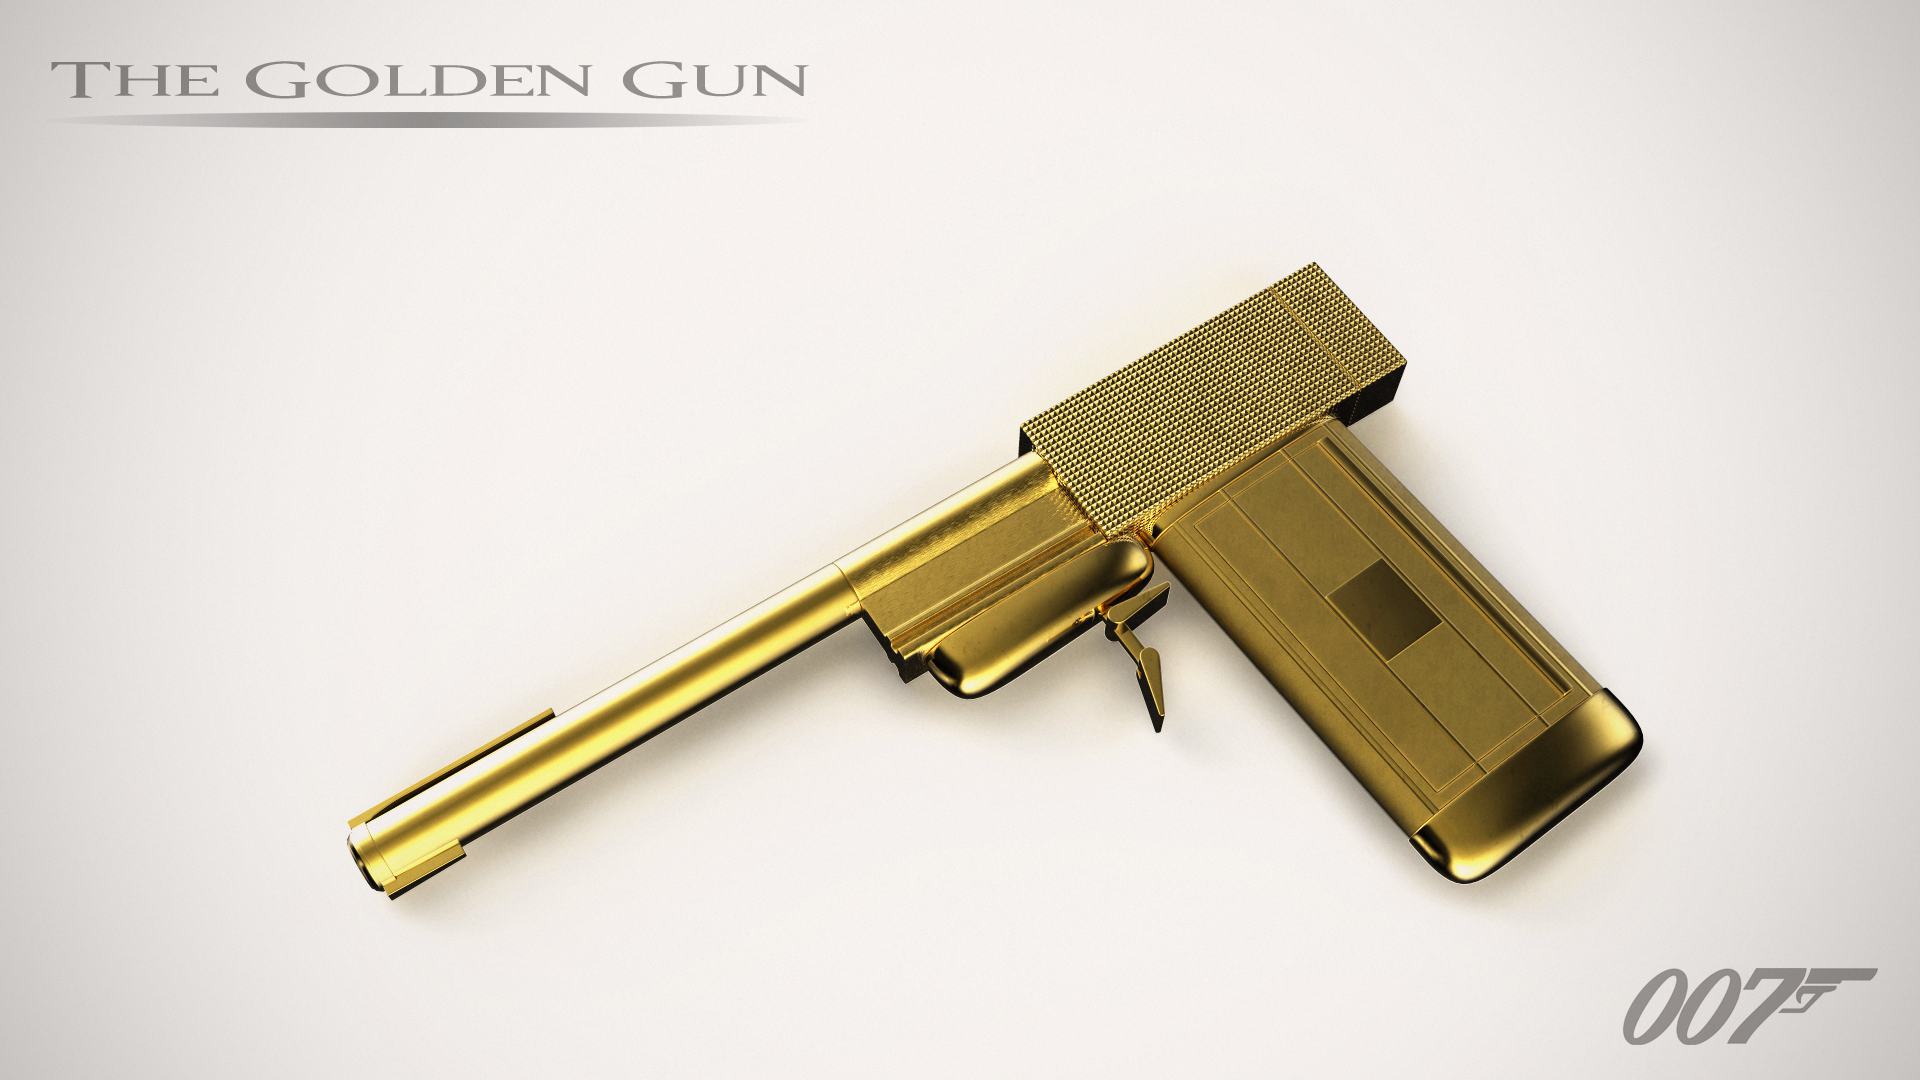 Golden gun wallpaper